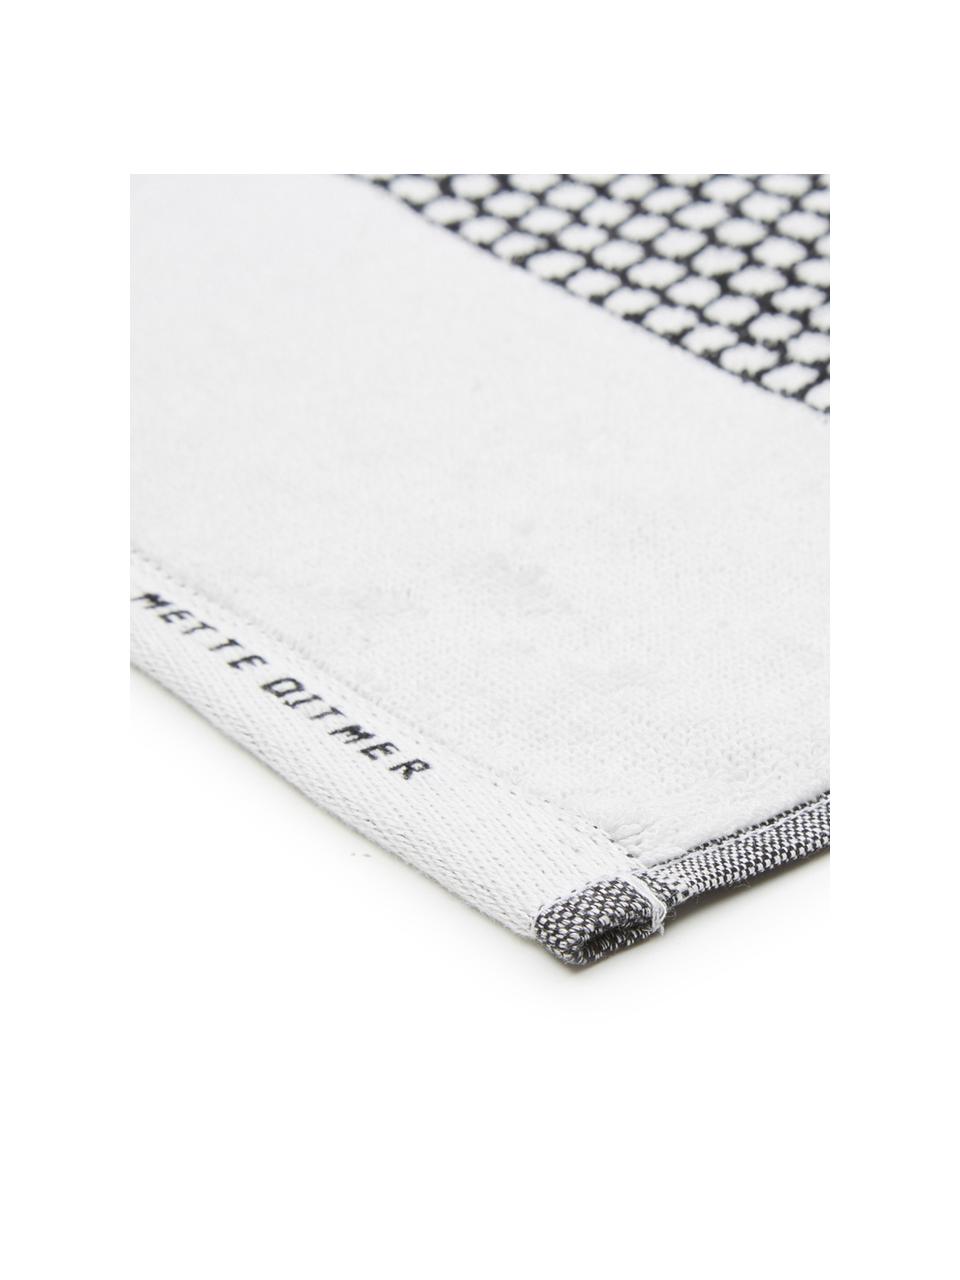 Ręcznik Grid, różne rozmiary, Czarny, biały, Ręcznik kąpielowy, S 70 x D 140 cm